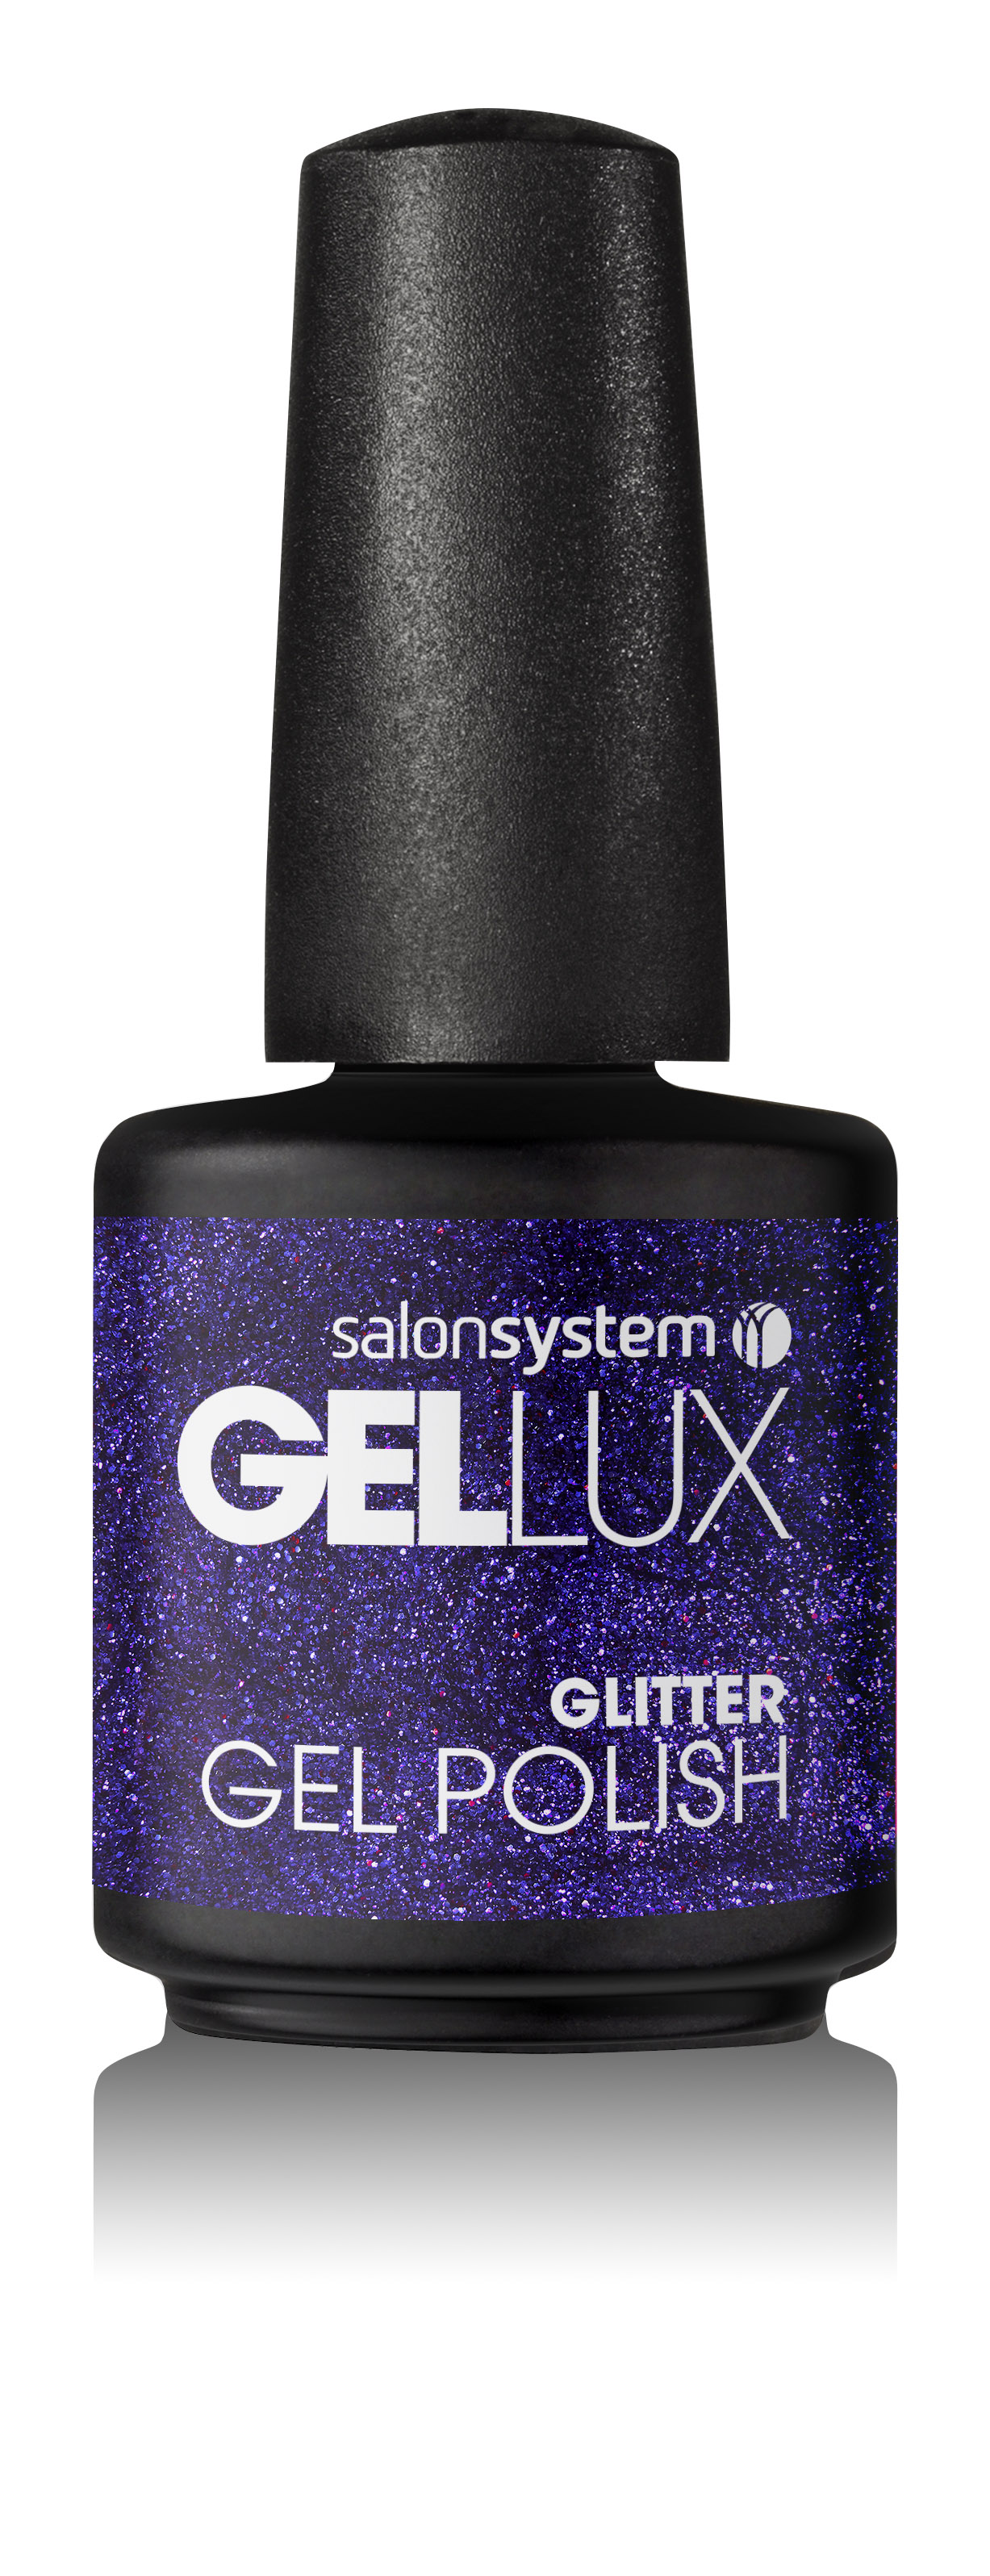 Gellux Starter Kit | Gel Nail Kit | Ellisons